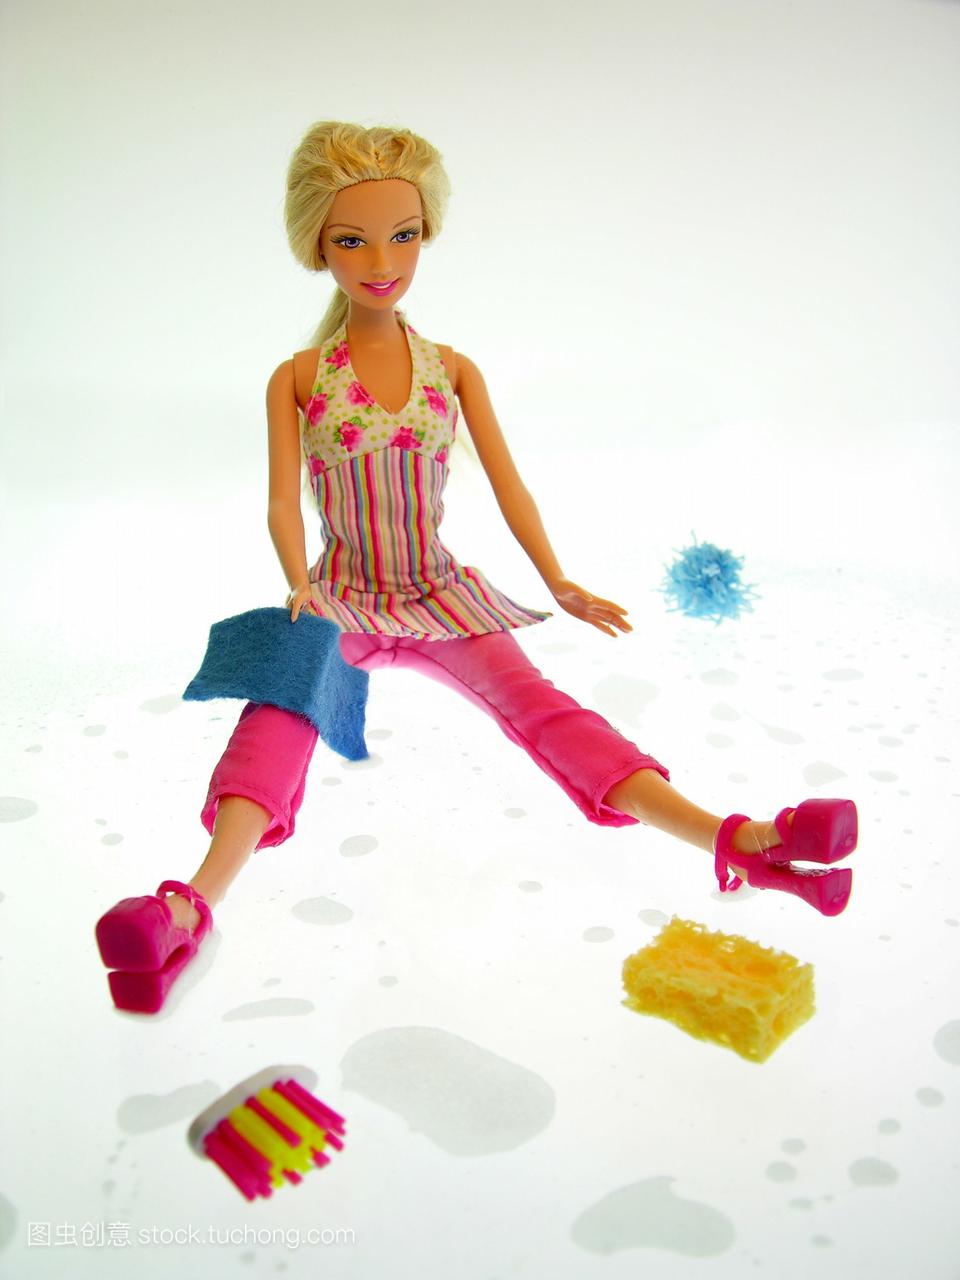 一个金发碧眼的芭比娃娃穿着粉红色的裤子和花